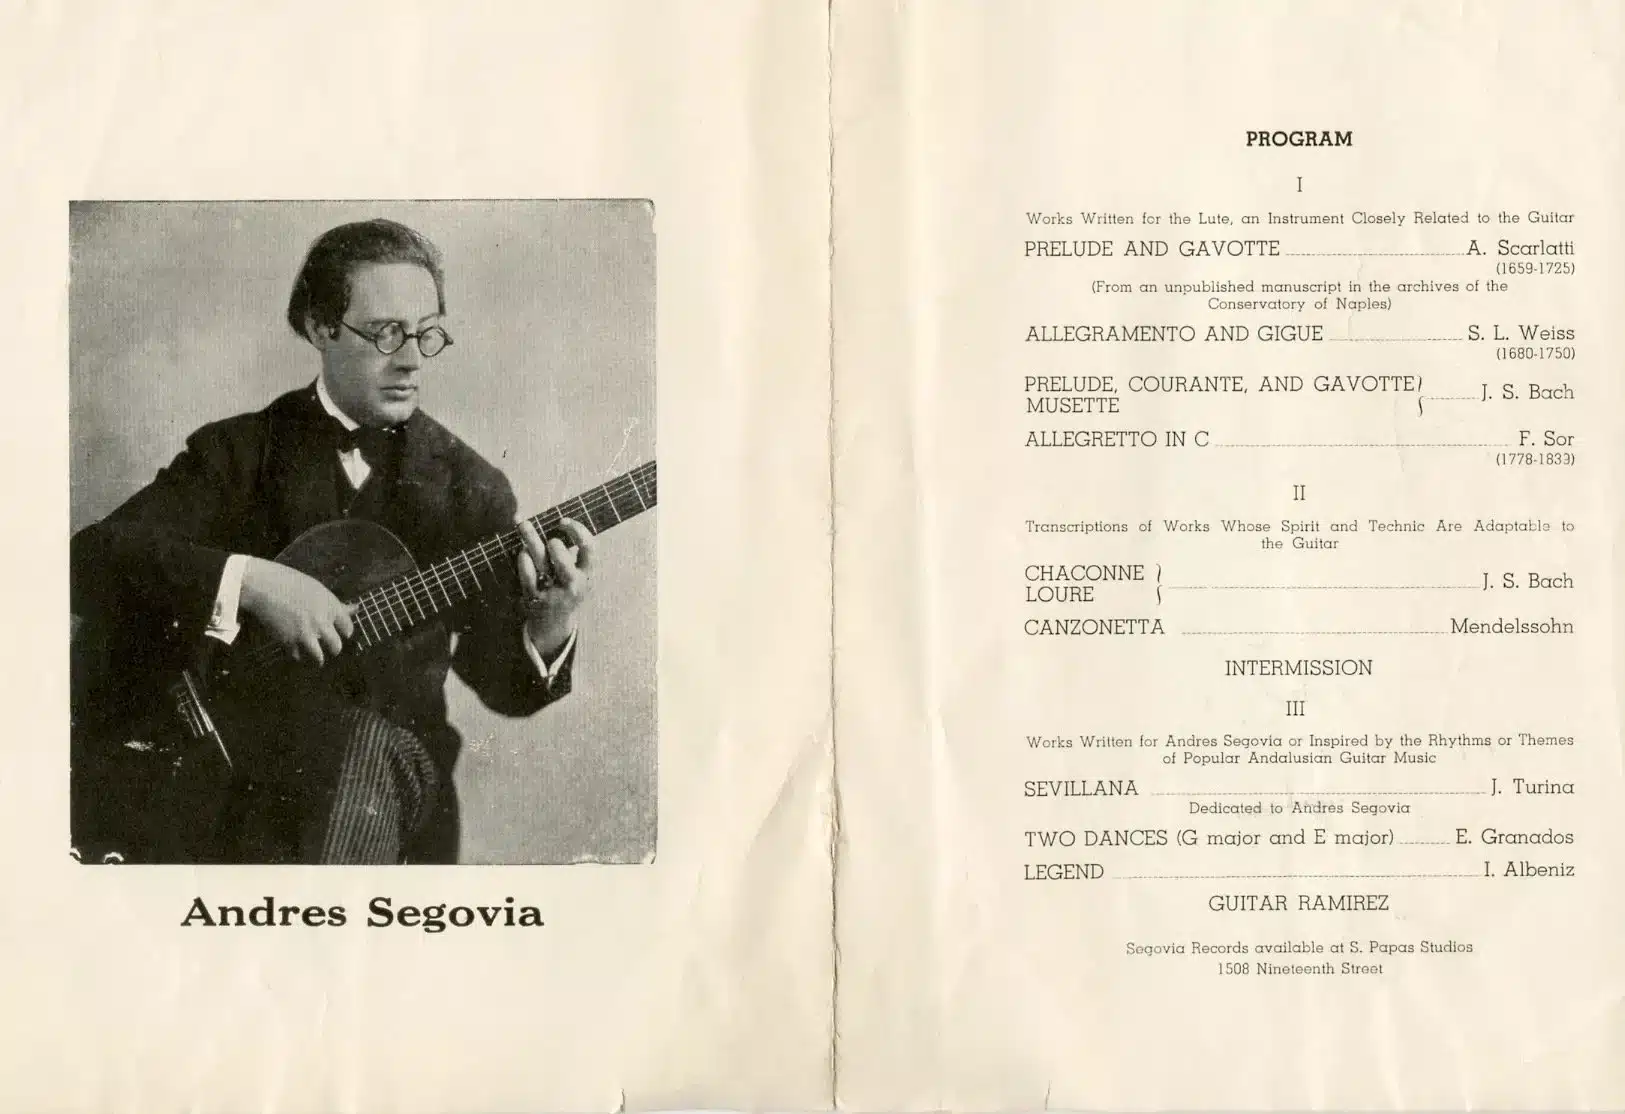 Program of a 1935 guitar concert by Andrés Segovia